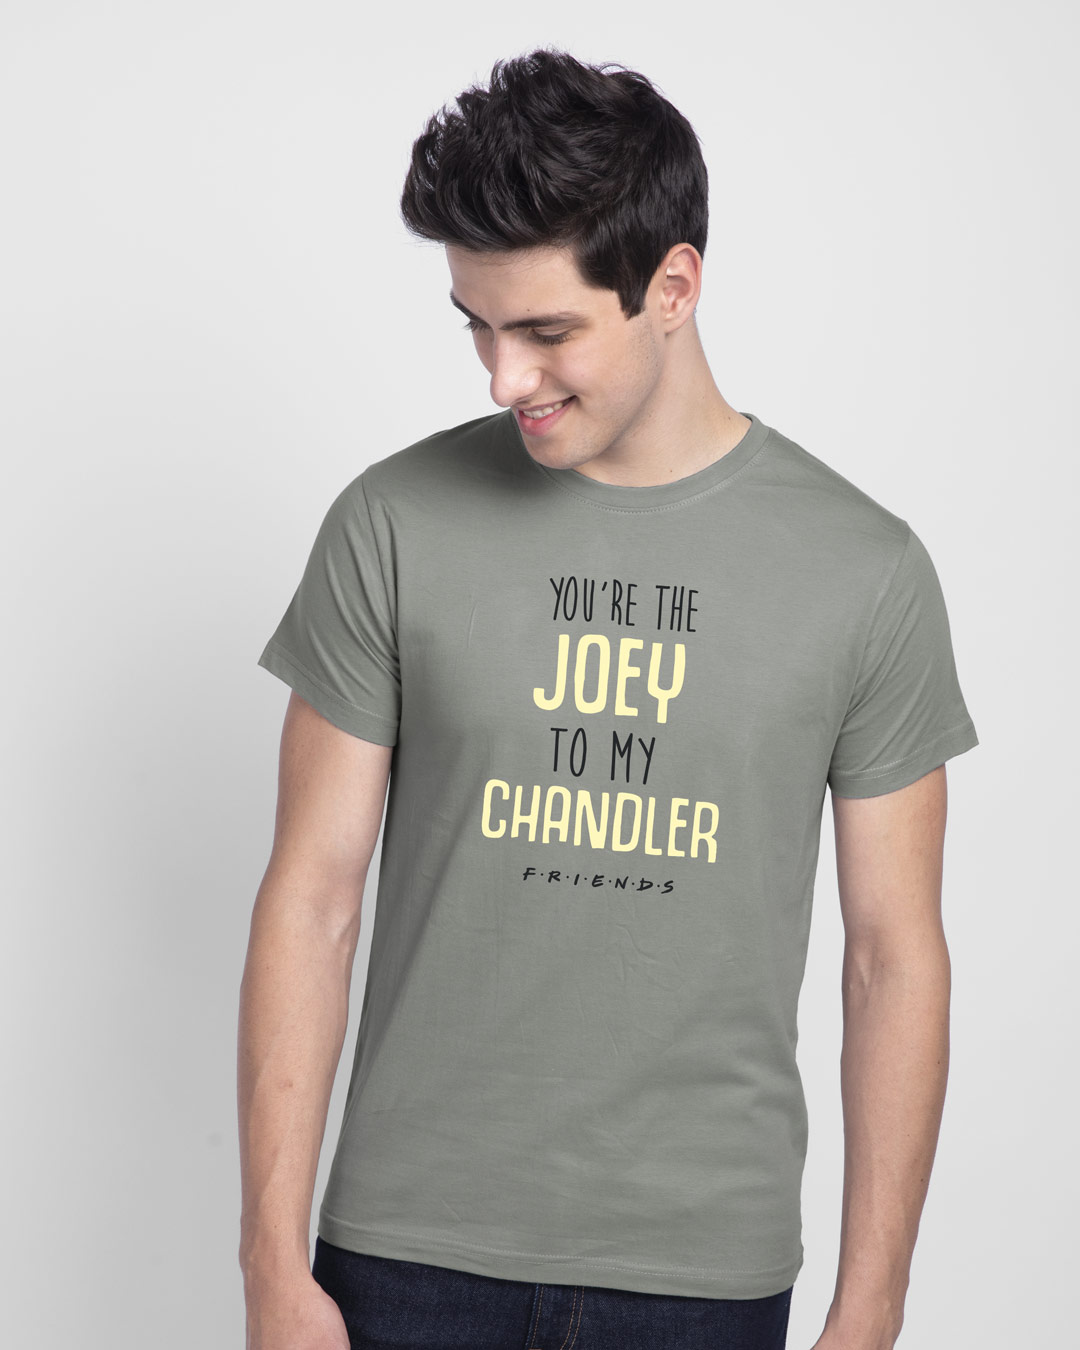 chandler shirt